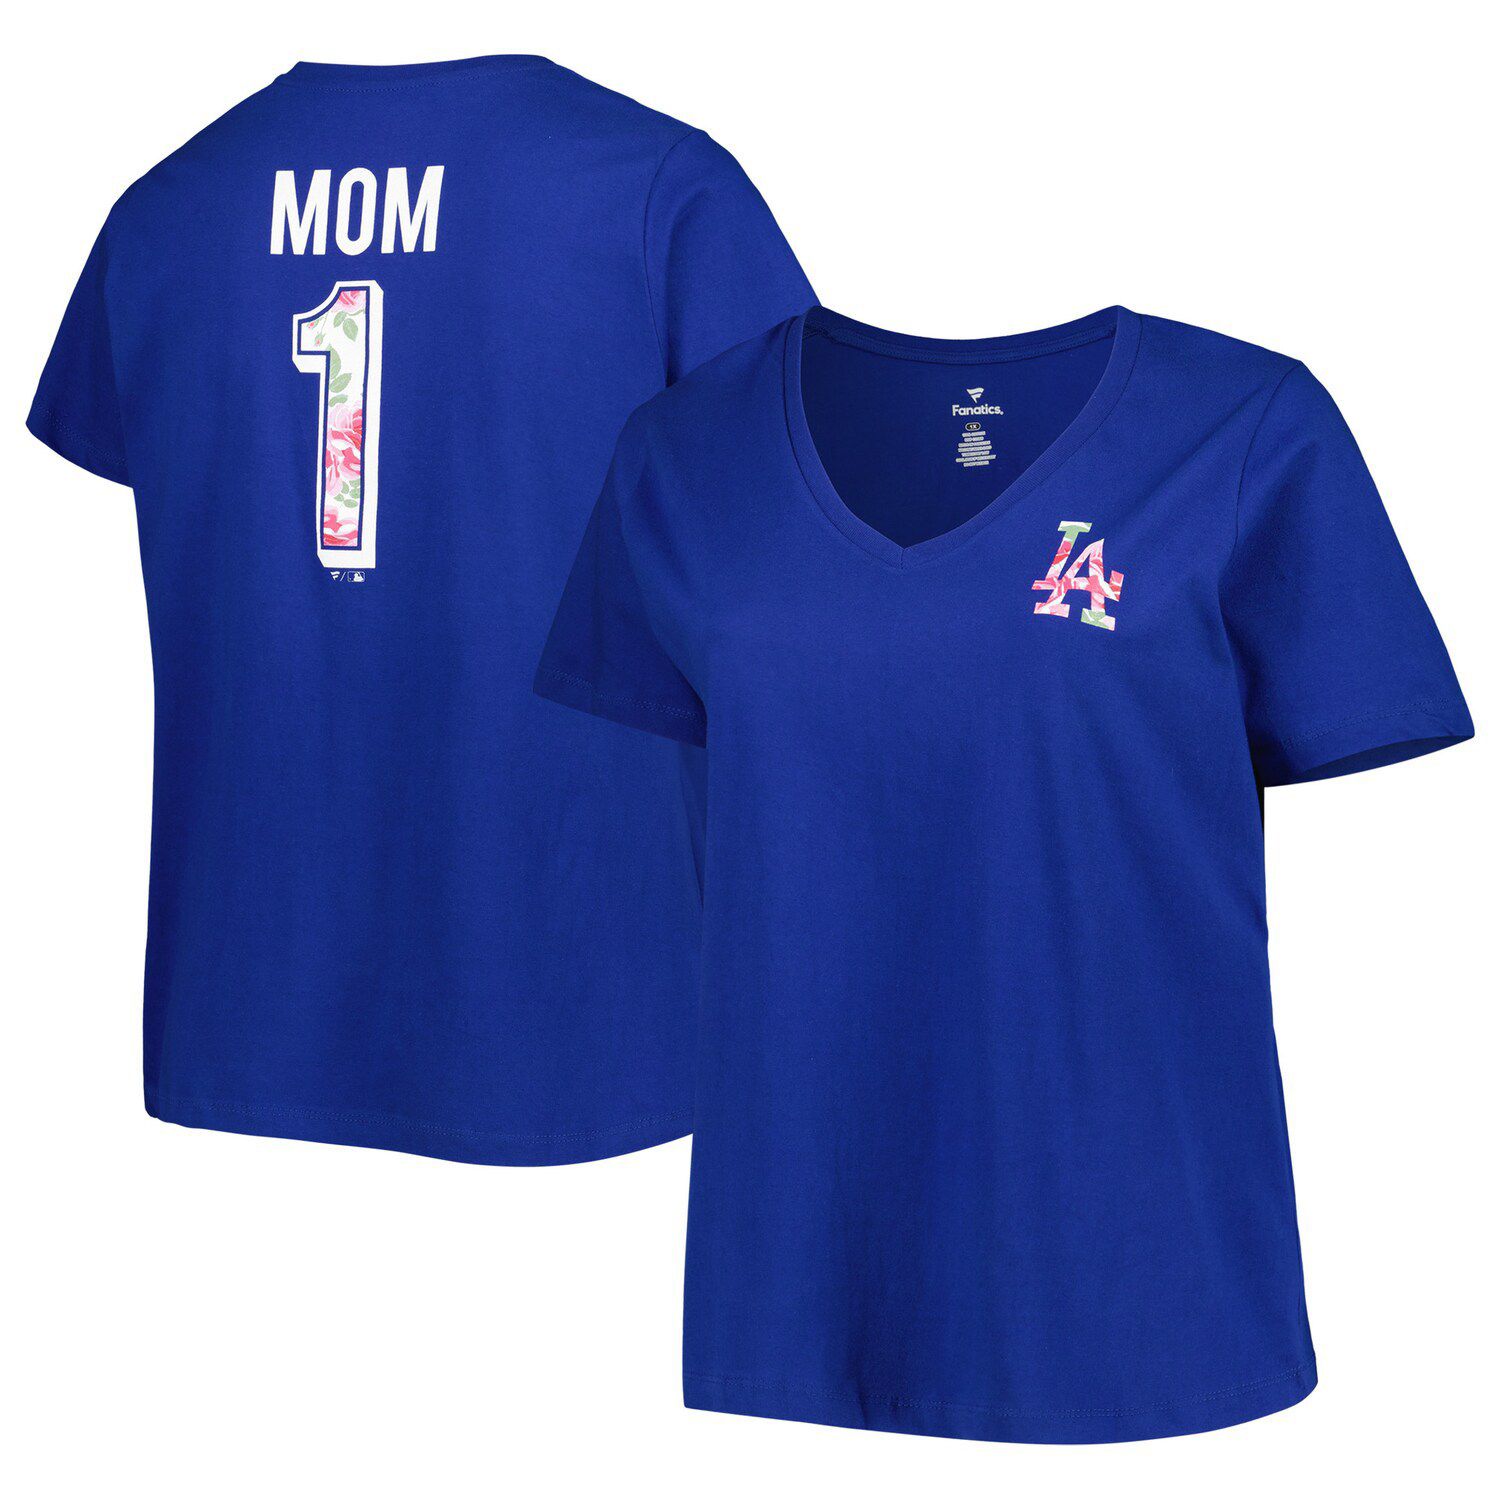 Fanatics Branded Women's Fanatics Branded Navy Boston Red Sox Best Mom Ever  V-Neck T-Shirt